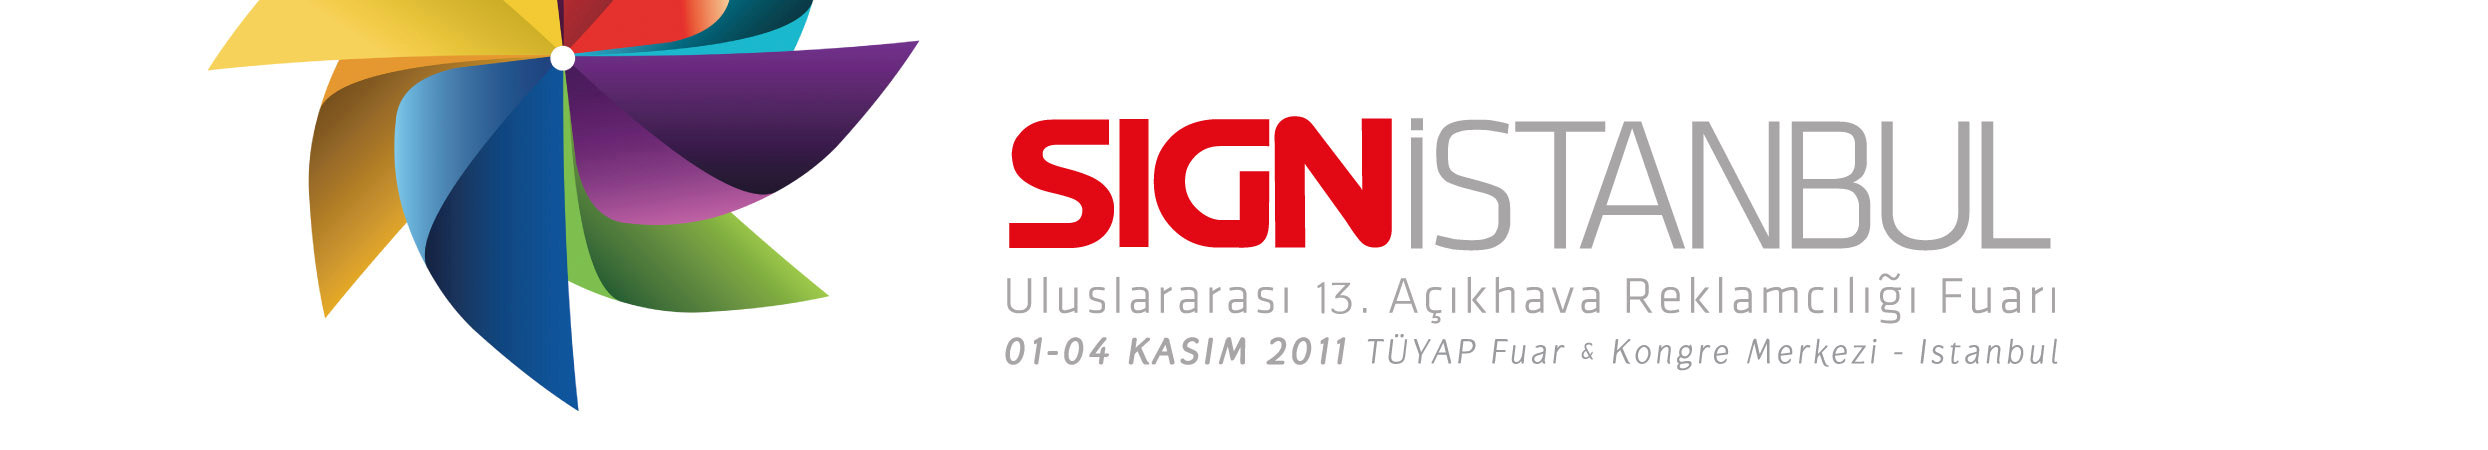 1 - Genel Bilgiler SIGN İstanbul 2011 Fuar katılımınızın başarılı geçmesini dileriz.